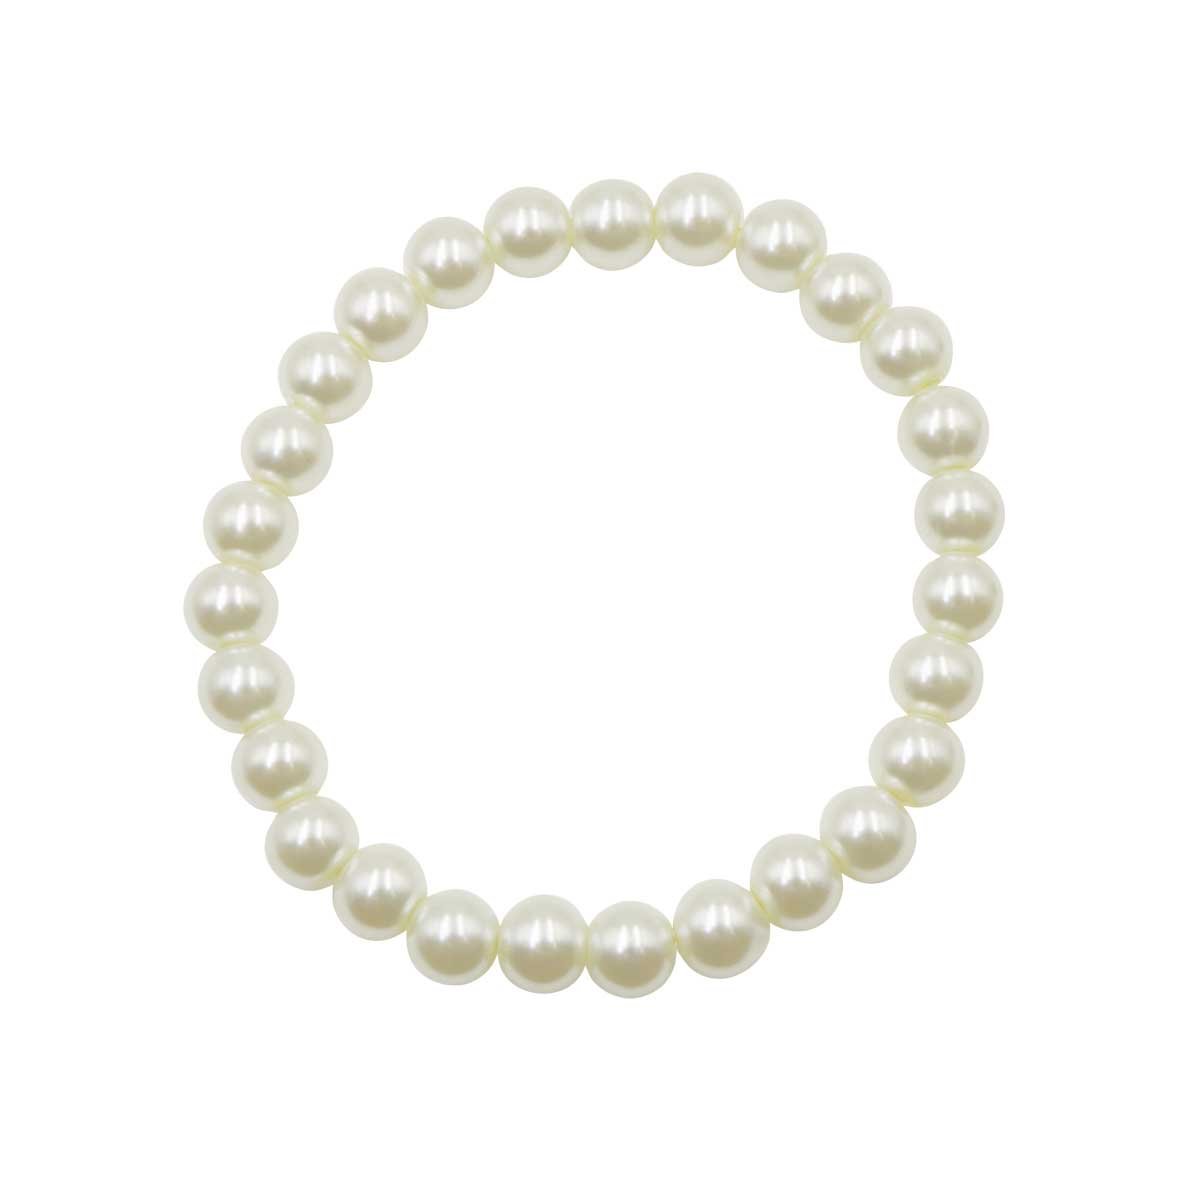 Pulsera con Perlas de Cristal Color Blancas Emanuel